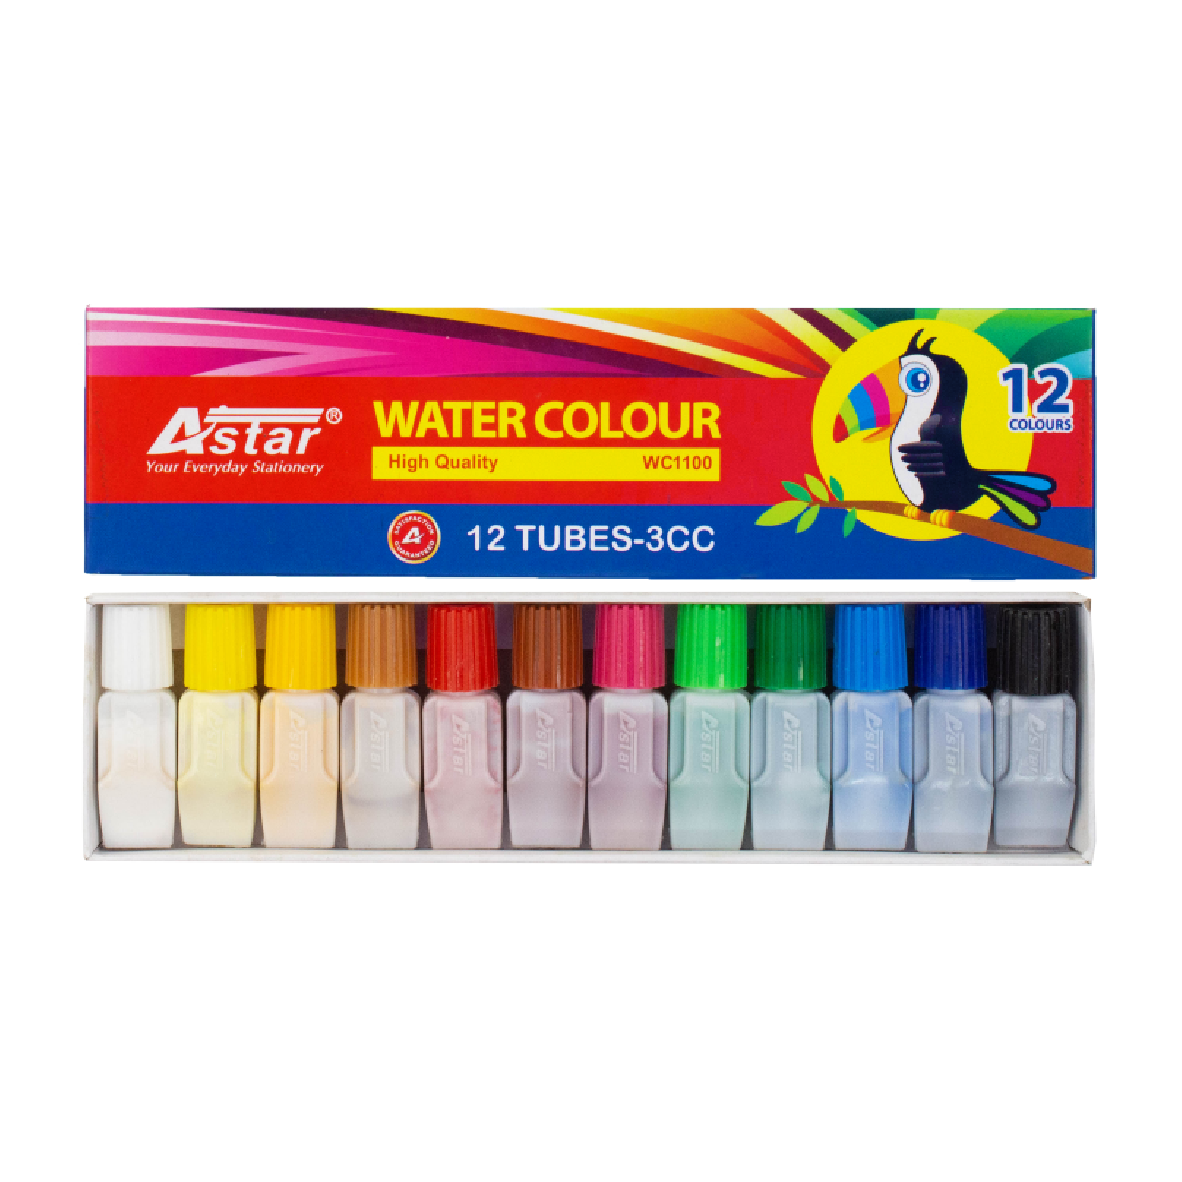 WC1100 - 12 Colours Water Colour